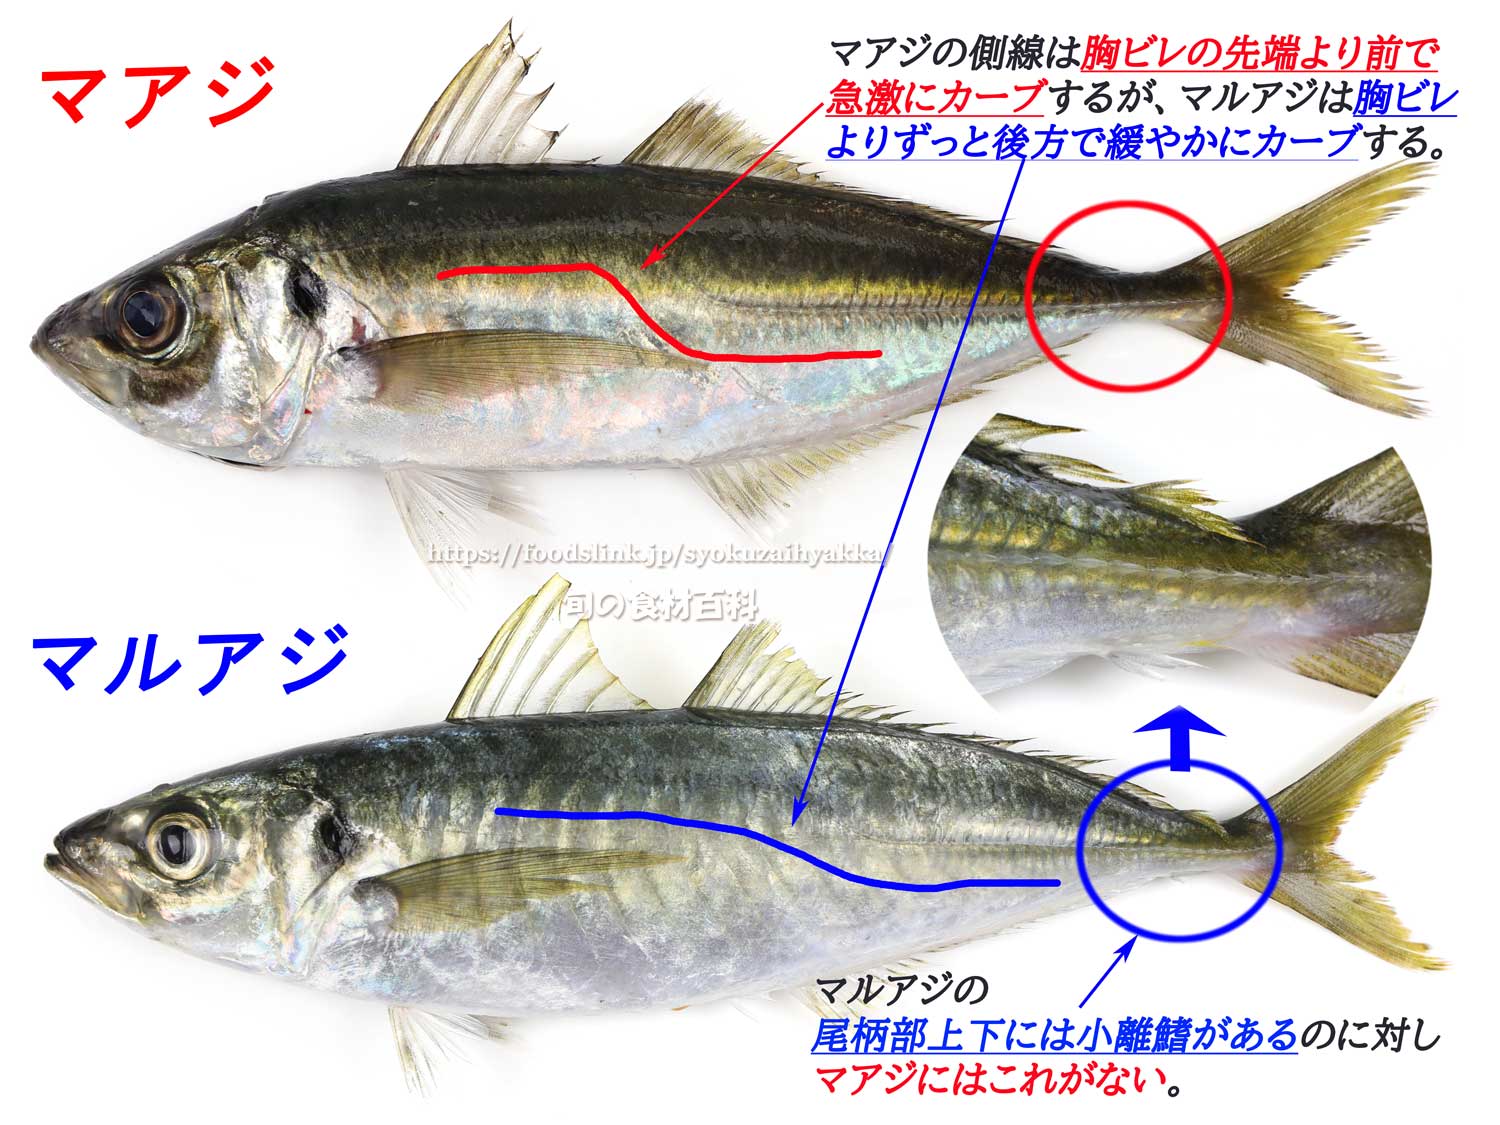 マルアジ 青アジ アジ 鯵 旬の魚介百科